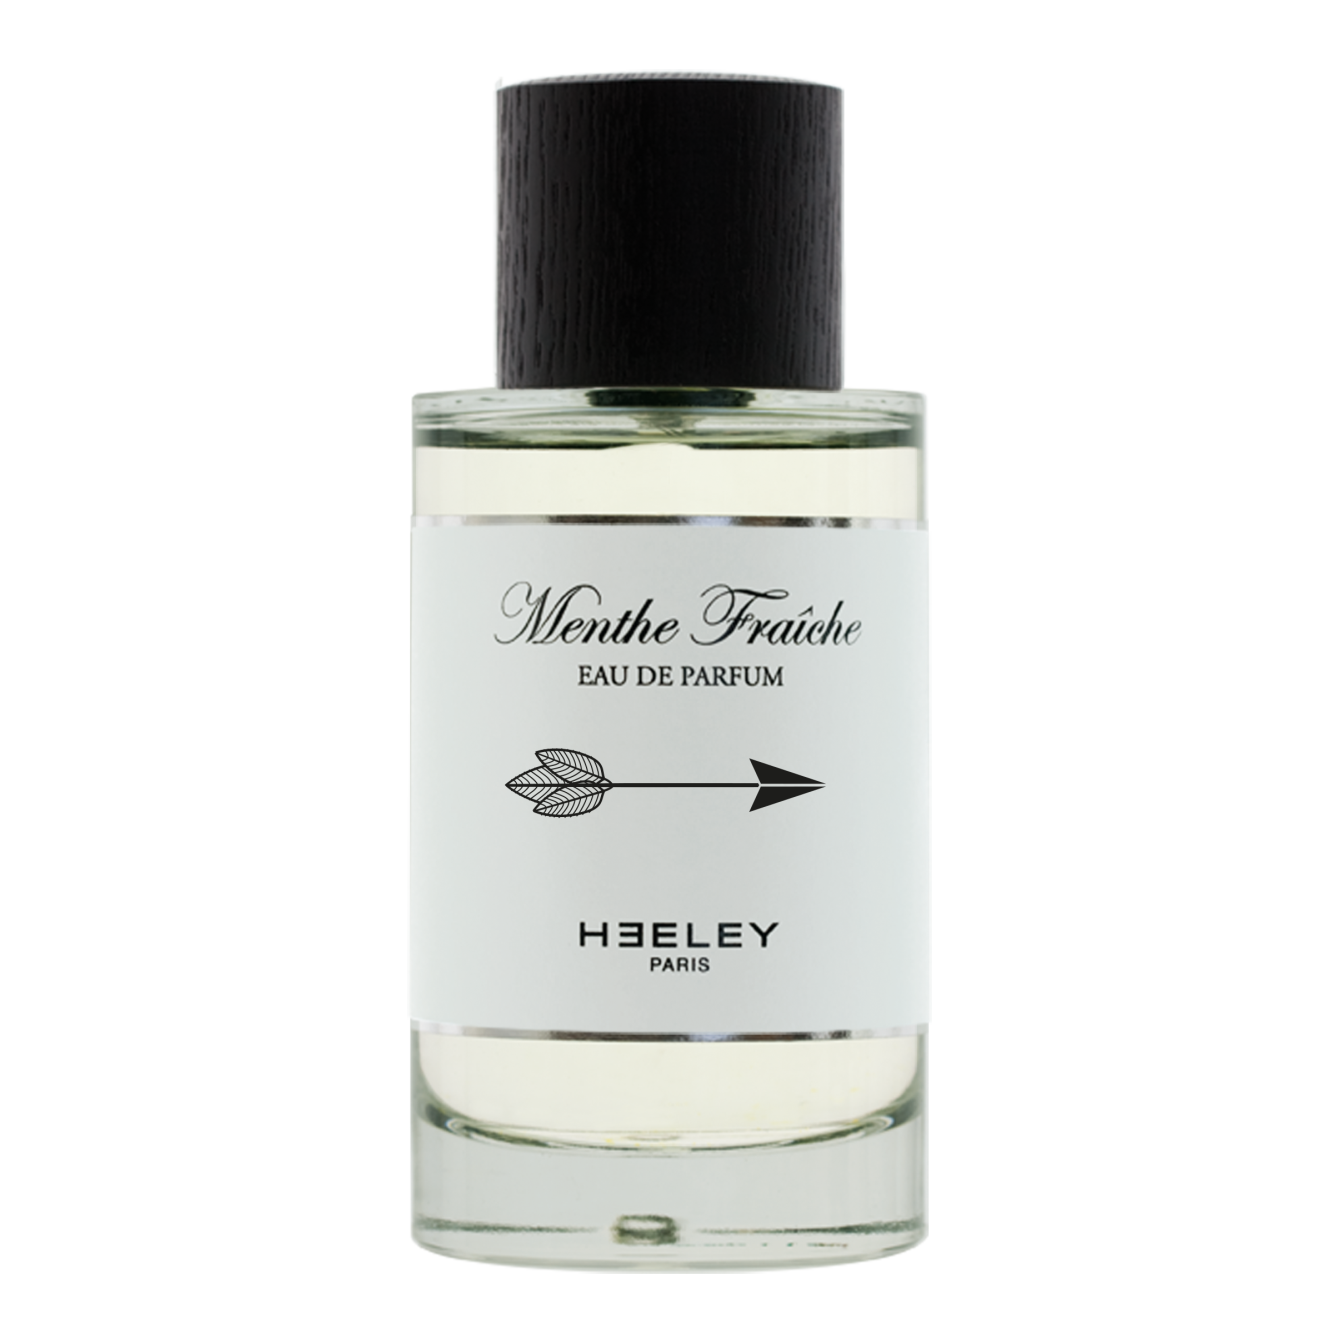 Heeley - Menthe Fraiche - Eau de Parfum